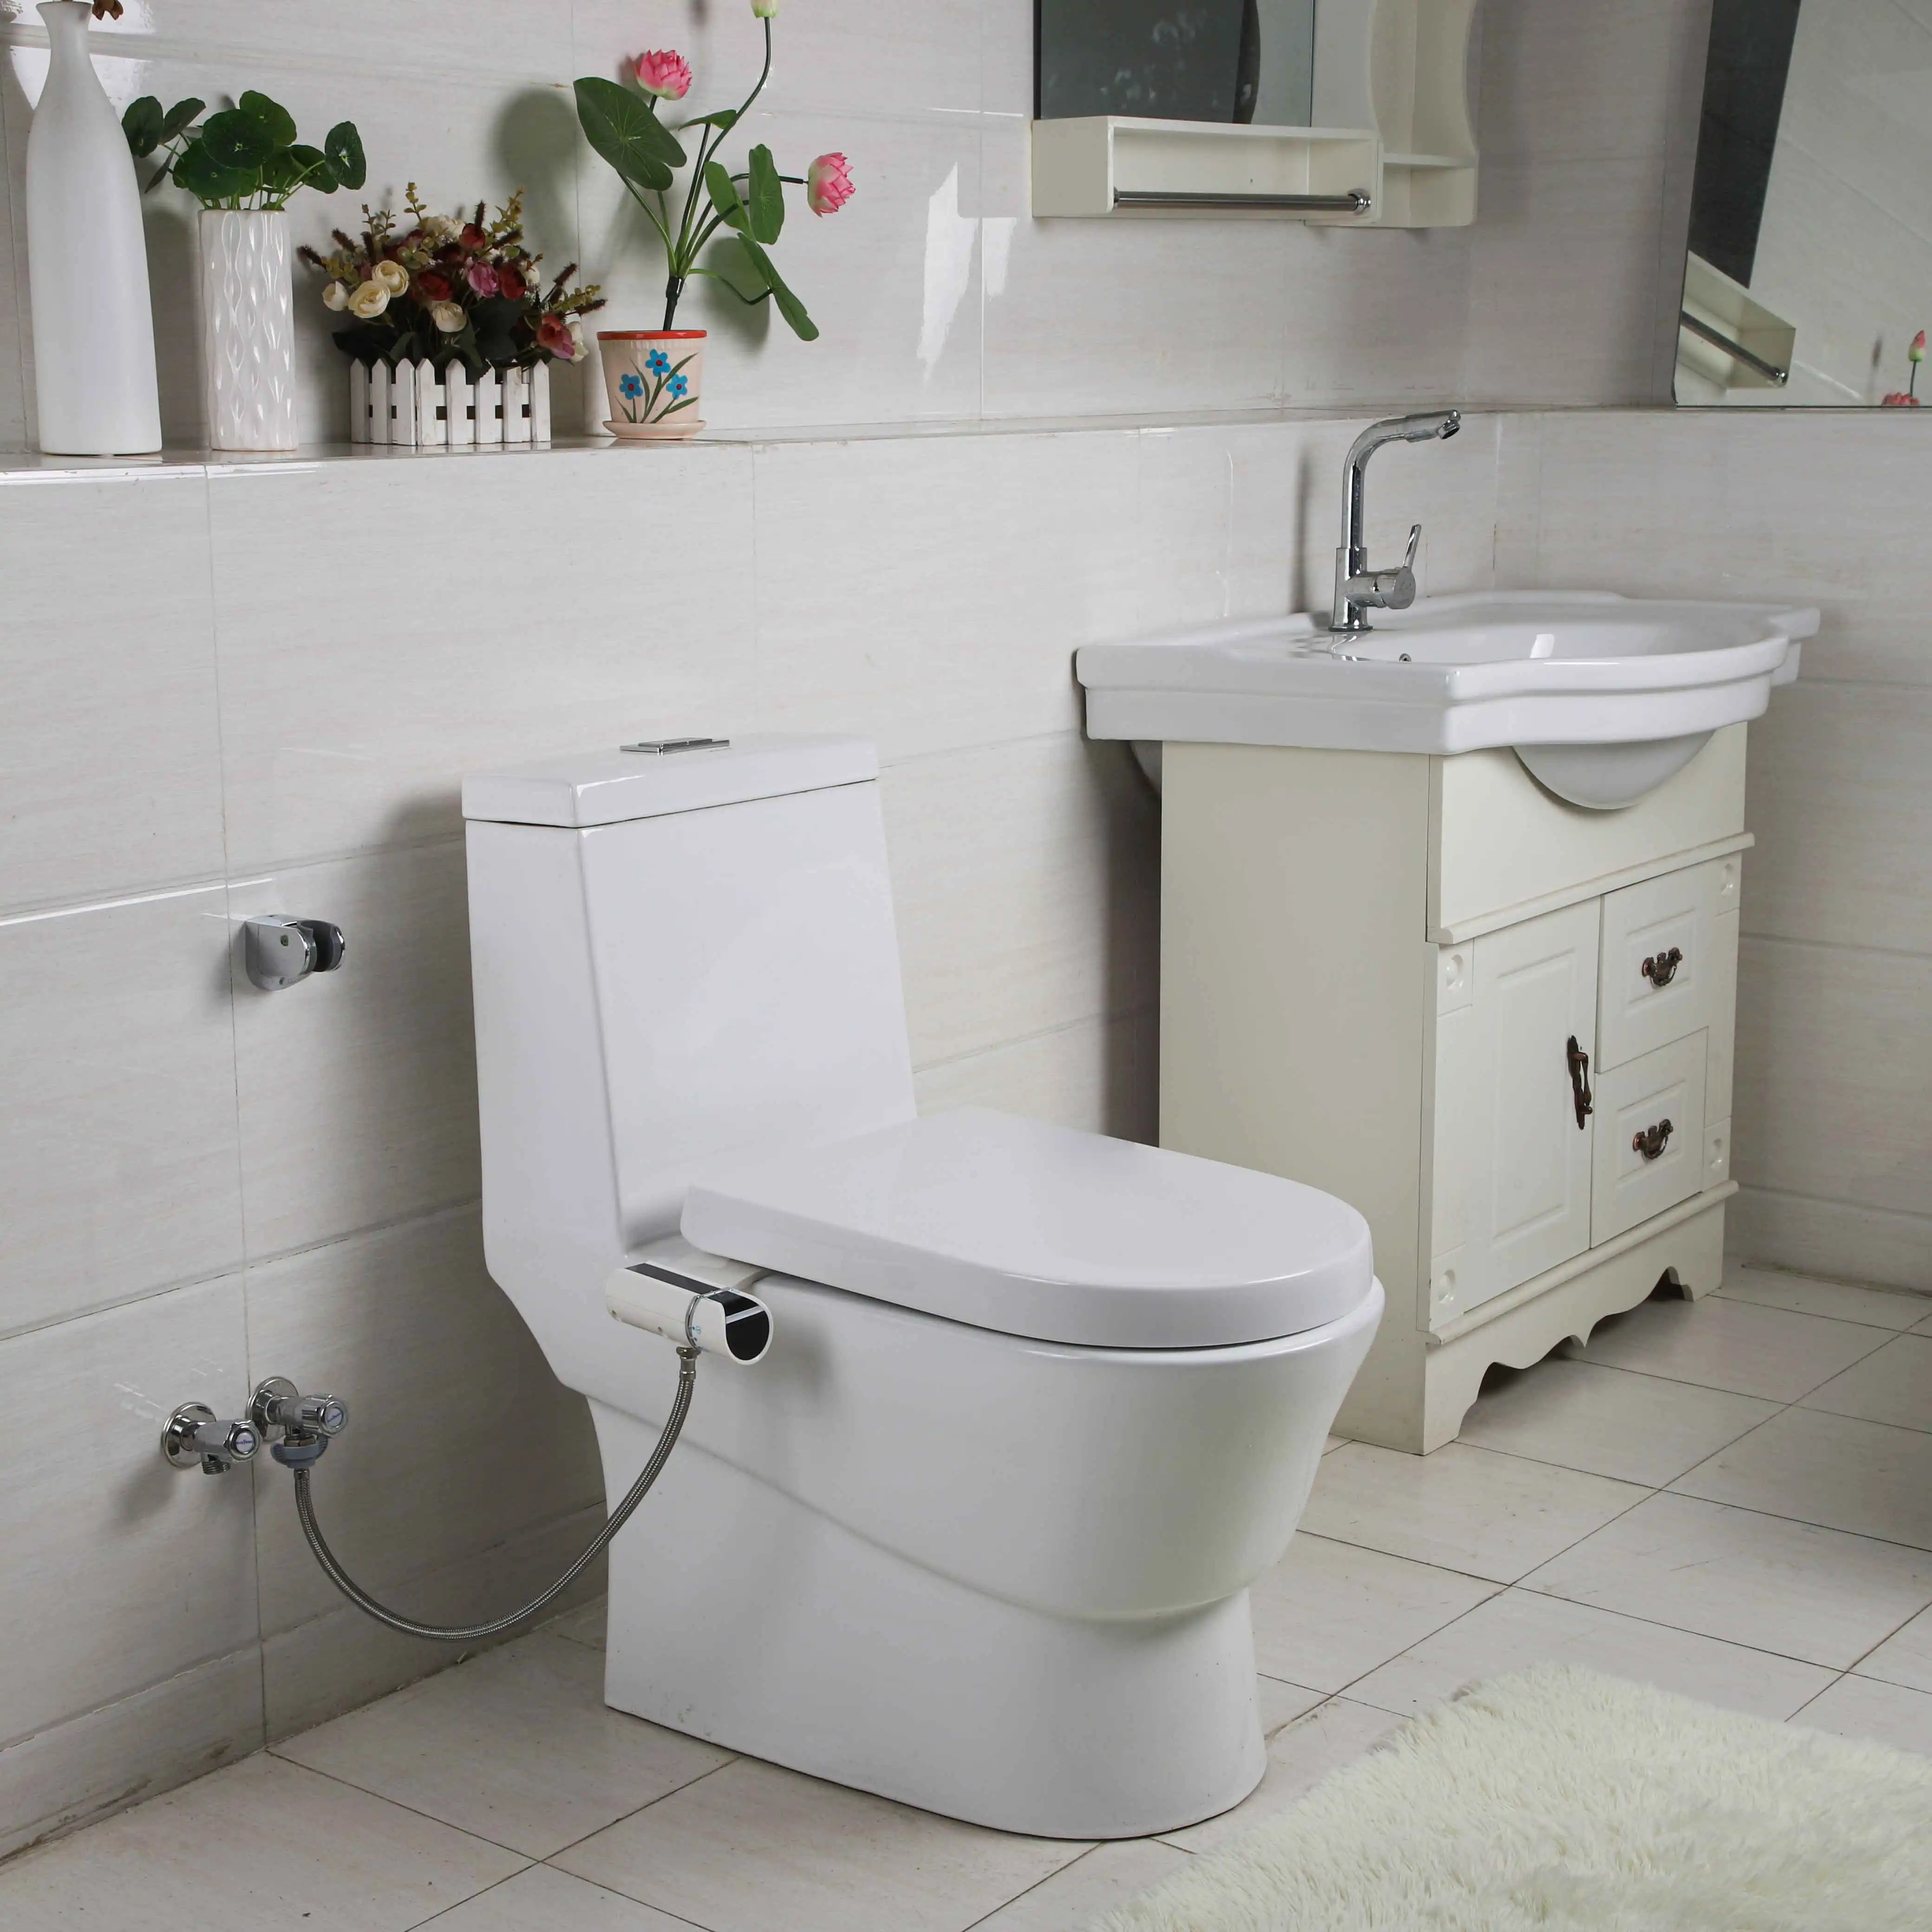 Arun shattaf nicht-elektrische toilettenwasser-sprühe heiß-und-kaltes toilettenwaschgerät waschtoilette toilettensitz-zubehör wc waschtoilette